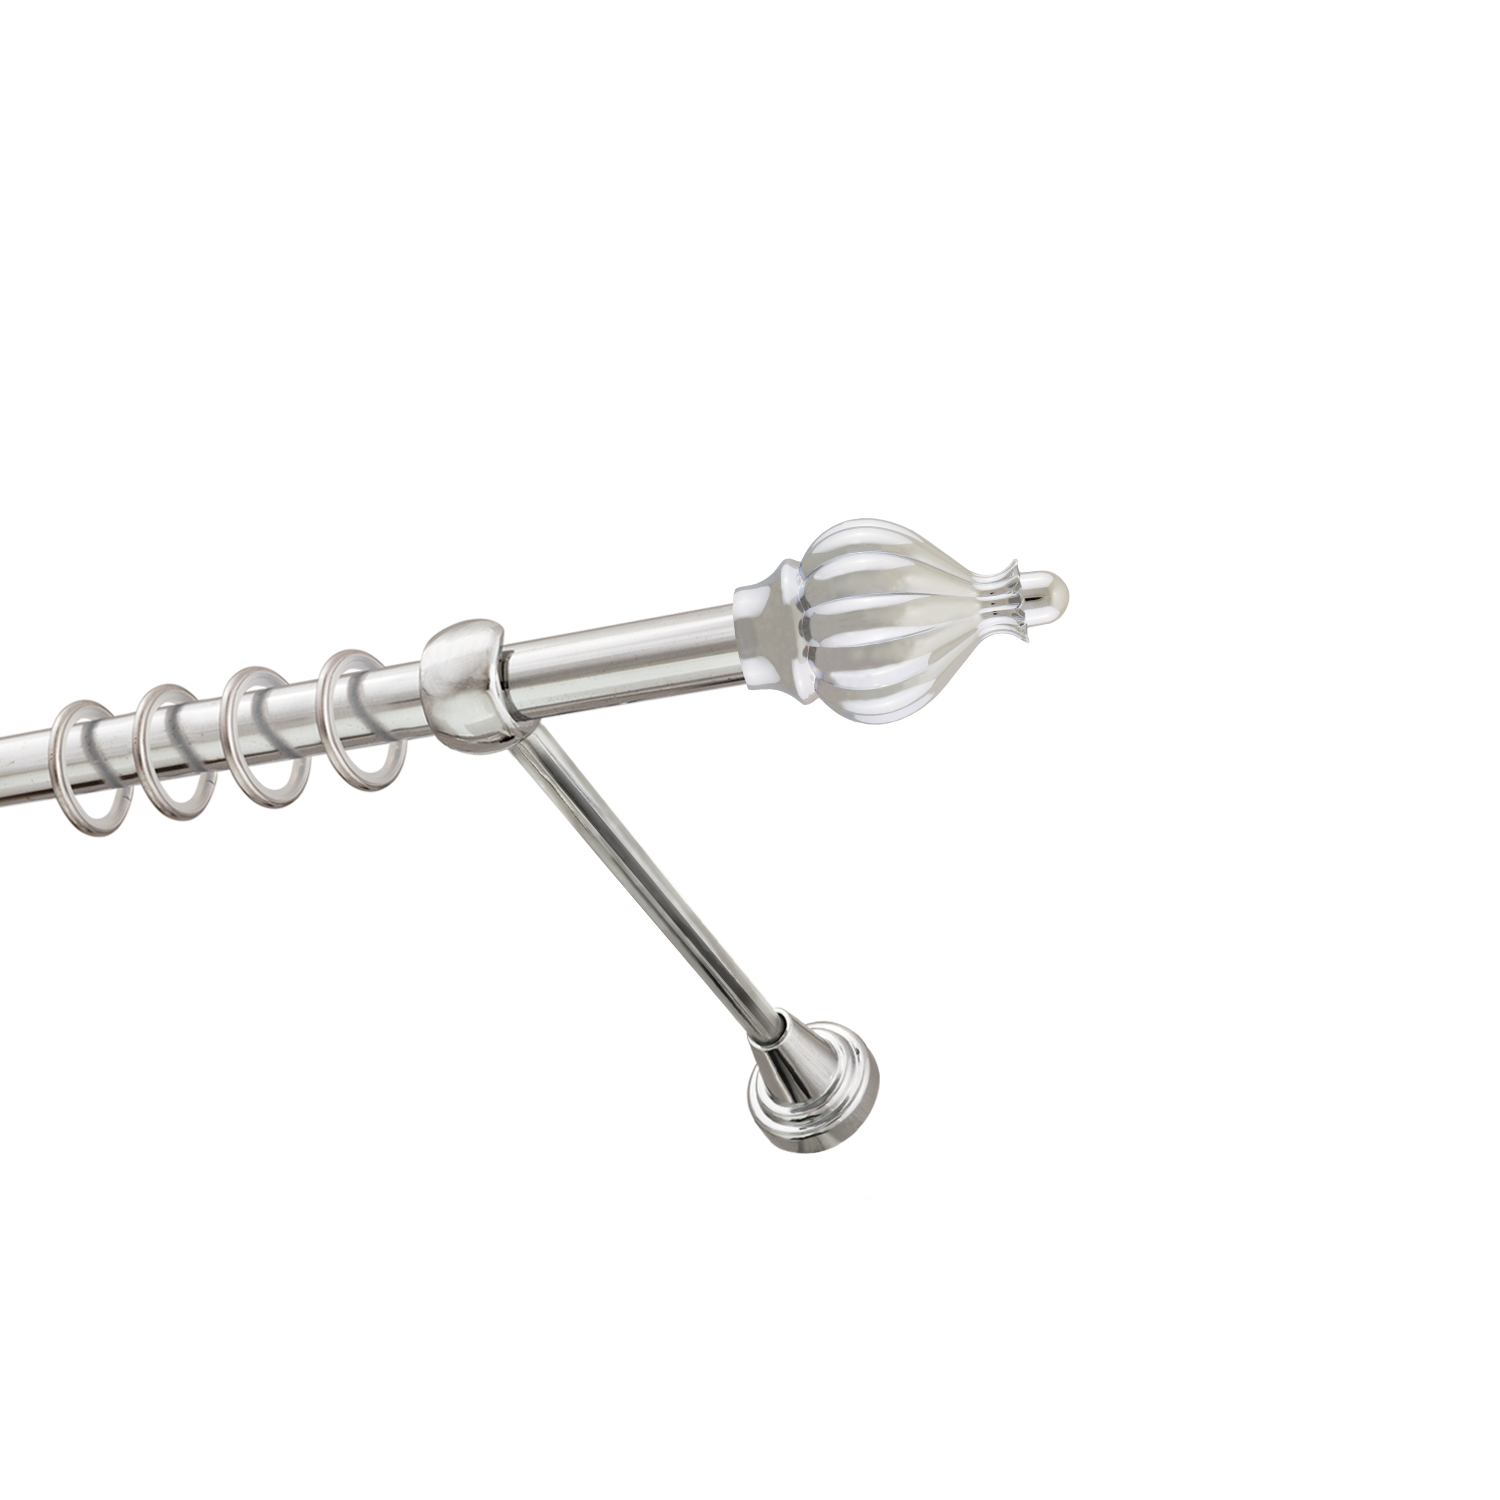 Металлический карниз для штор Афродита, однорядный 16 мм, серебро, гладкая штанга, длина 180 см